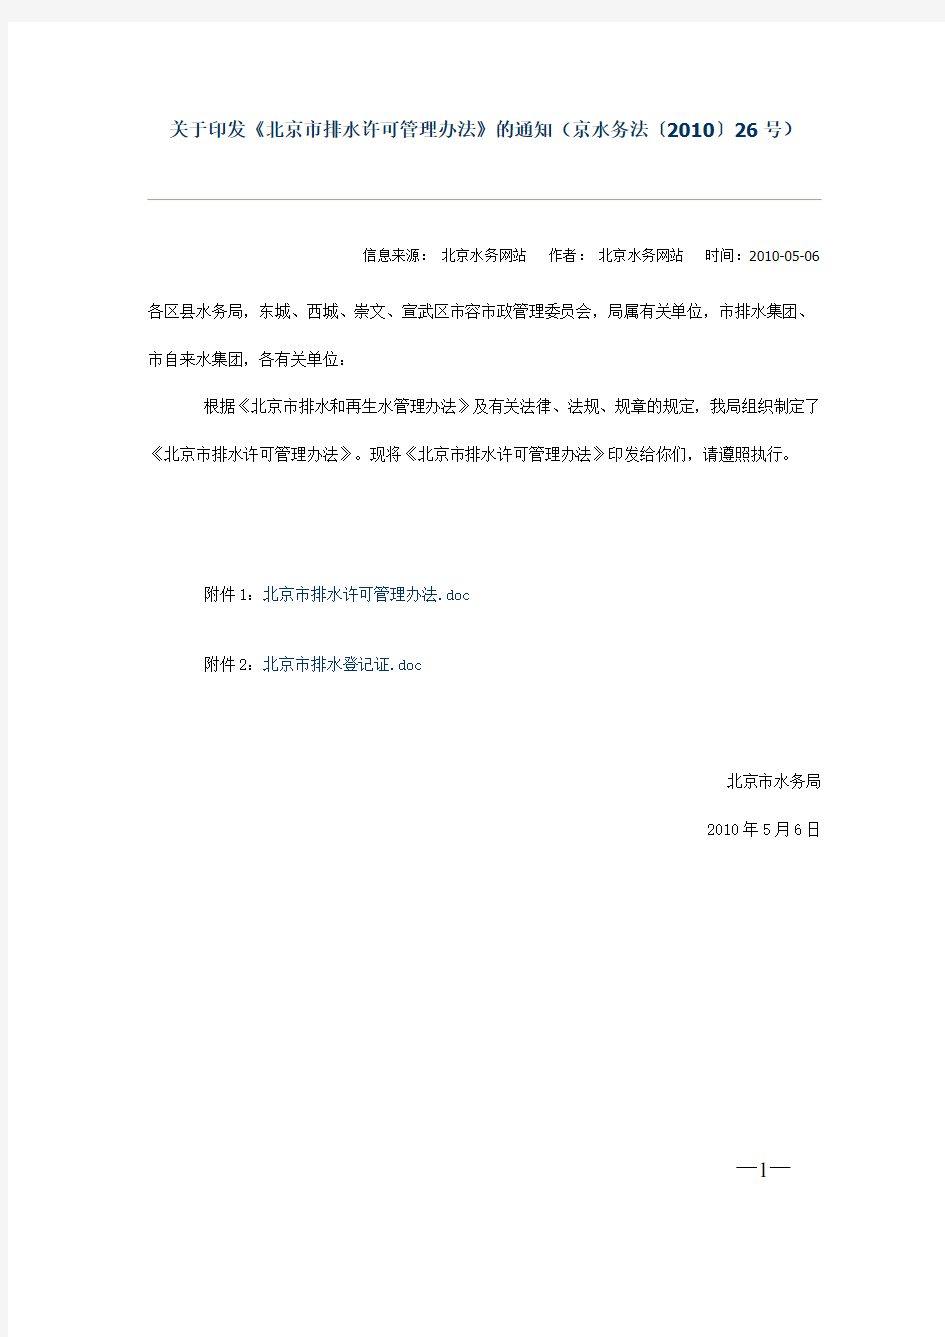 (京水务法〔2010〕26号)北京市排水许可管理办法